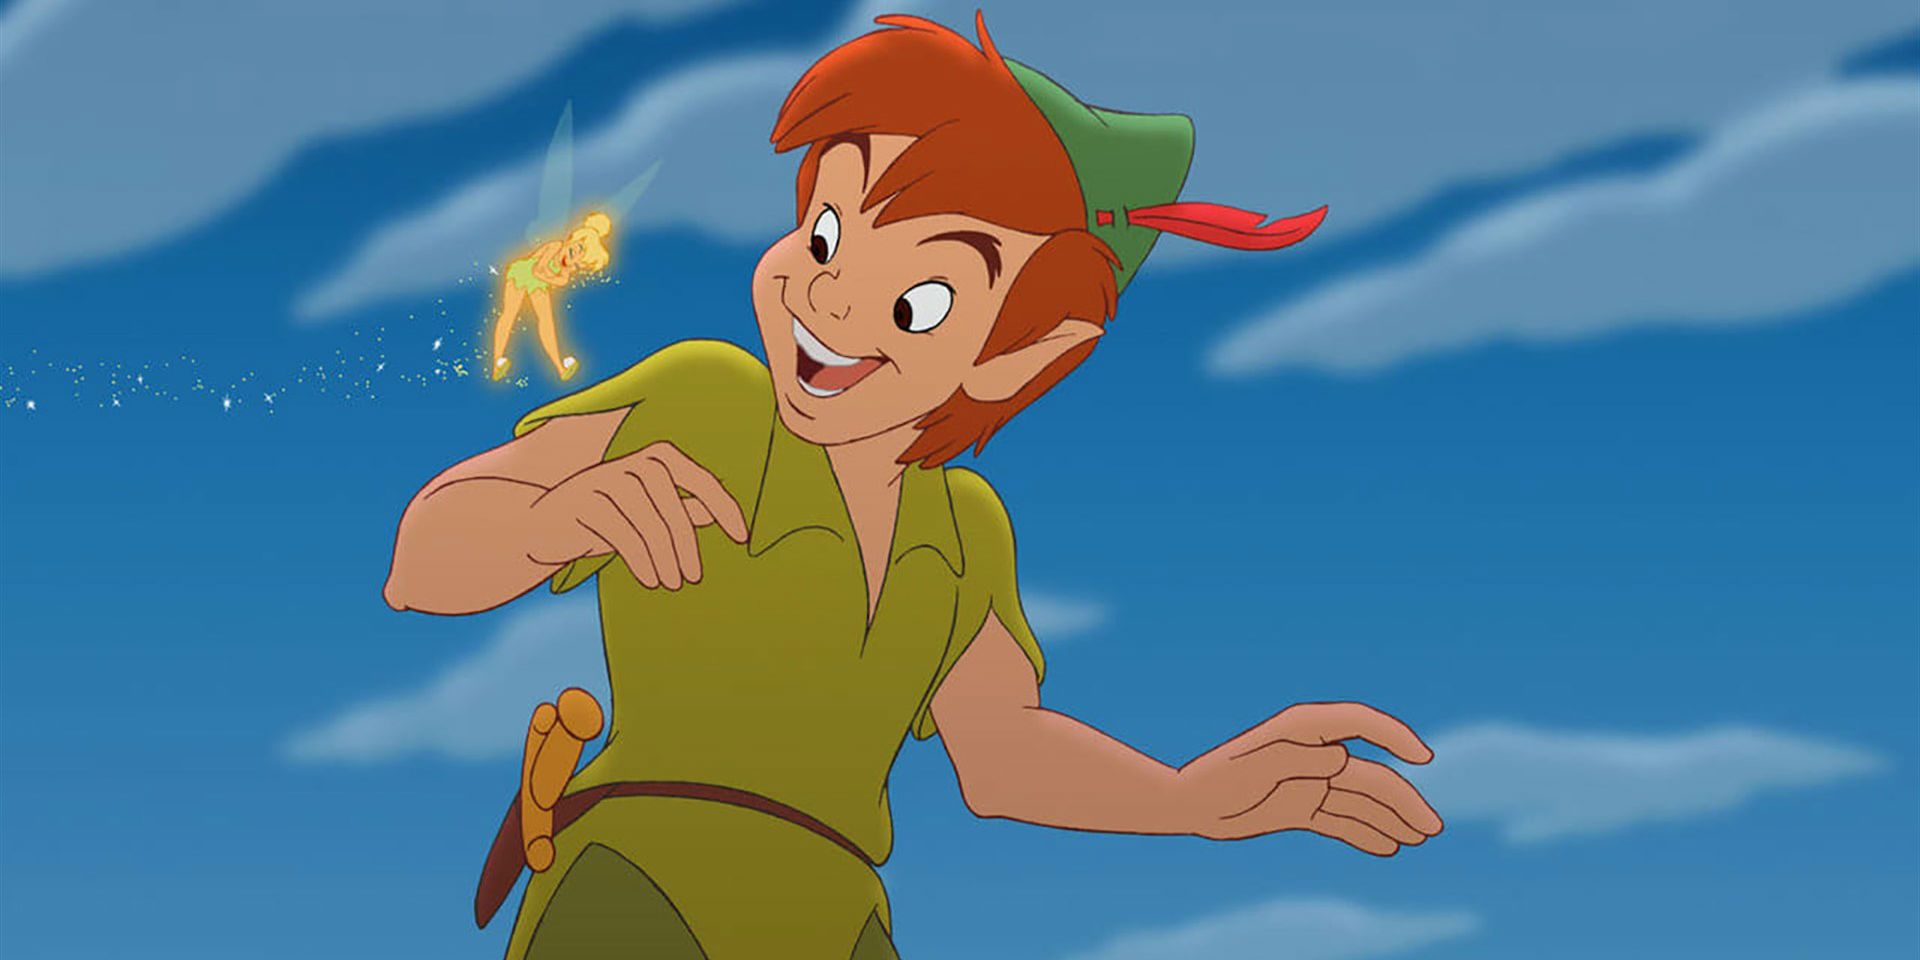 Peter Pan and Tinkerbell - Disney's Peter Pan